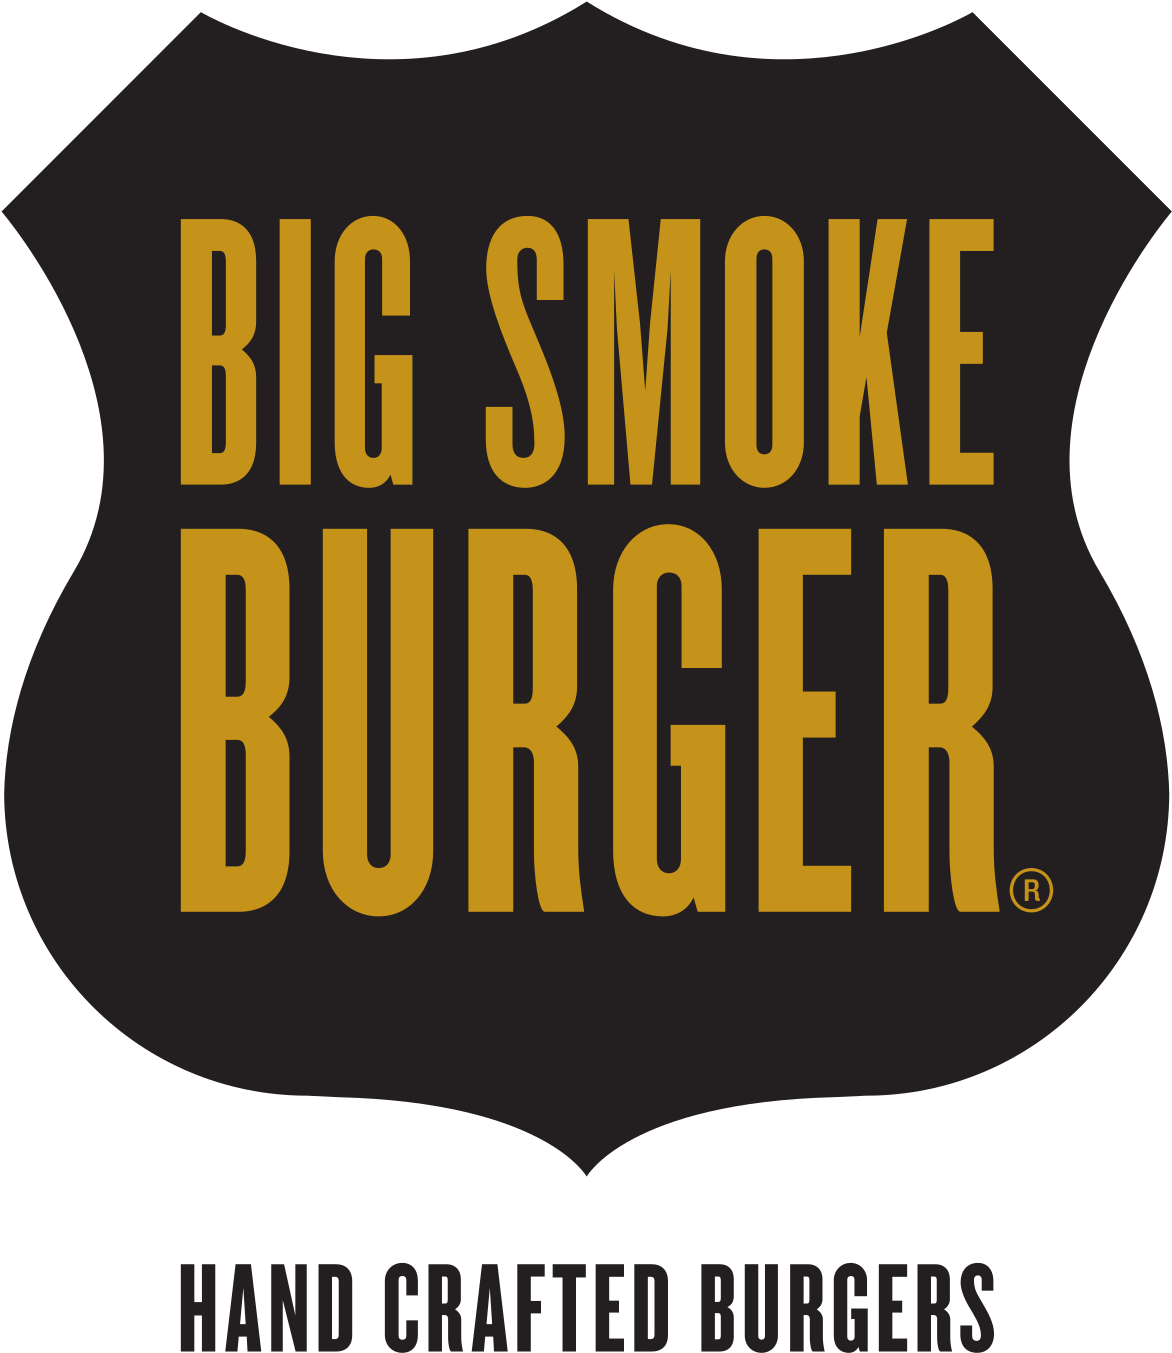 Big Smoke Burger Logo PNG image